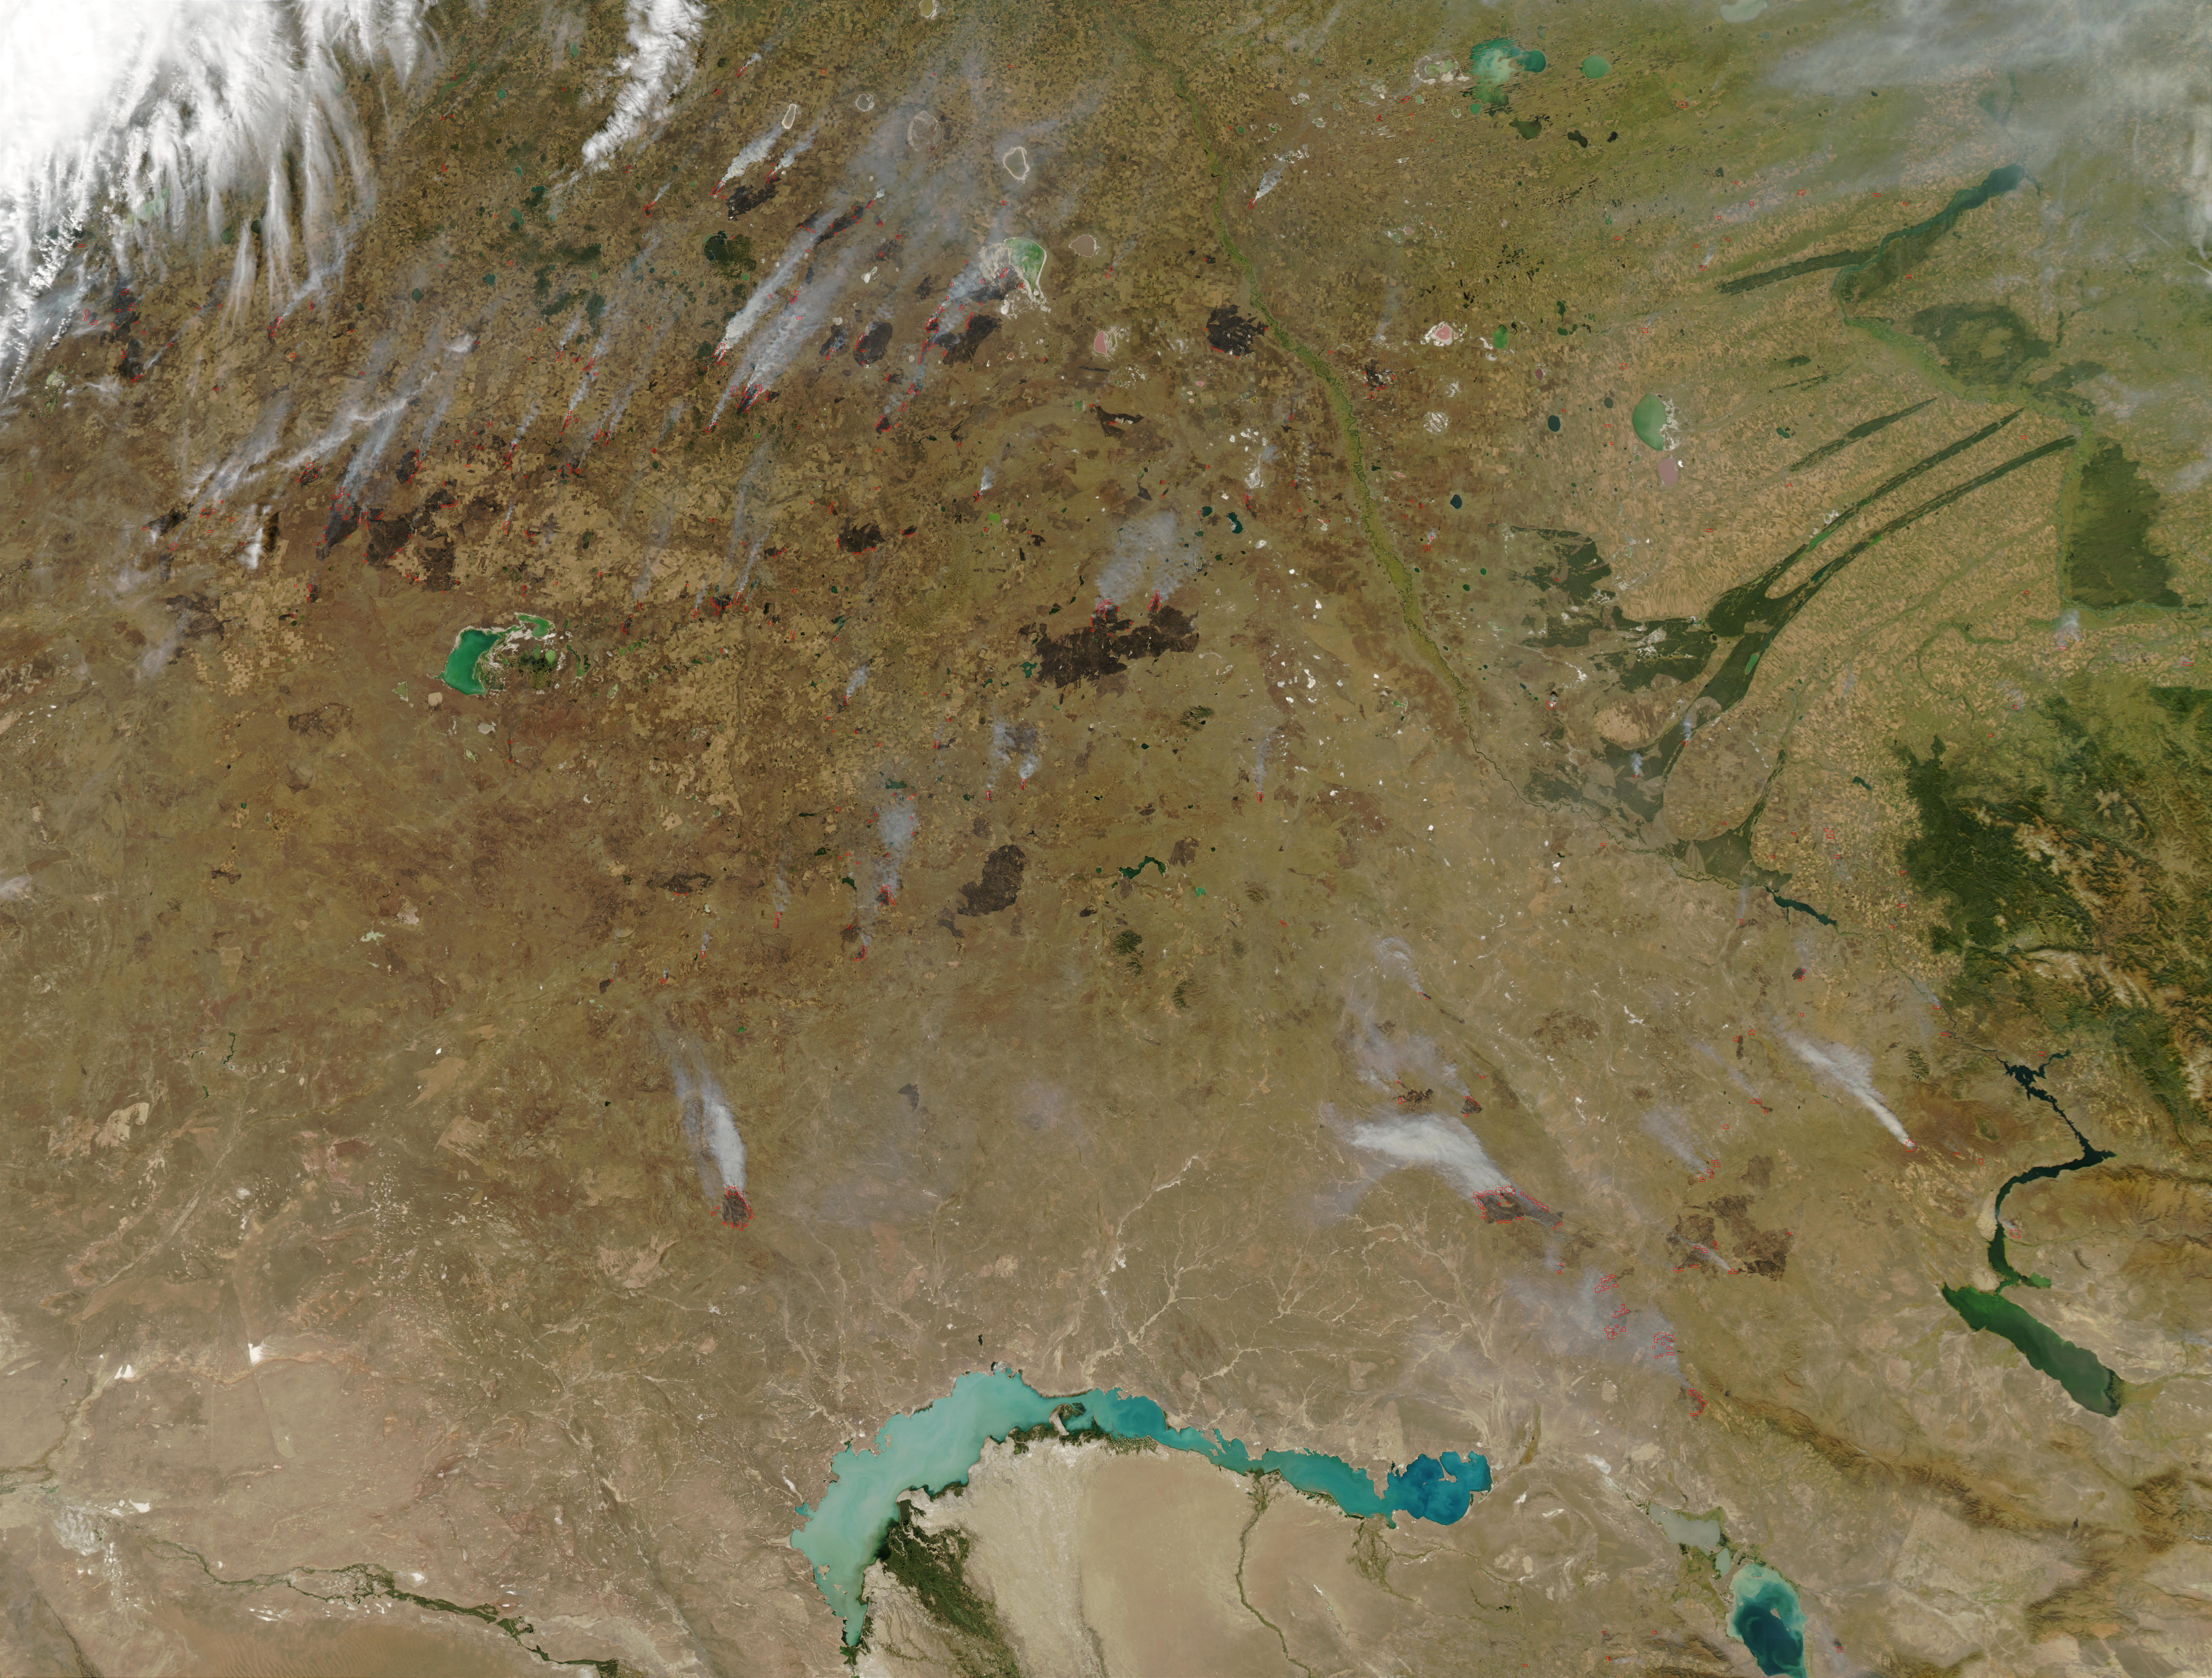 Cicatrices de fuegos y fuegos de fines de temporada en Kazajistán